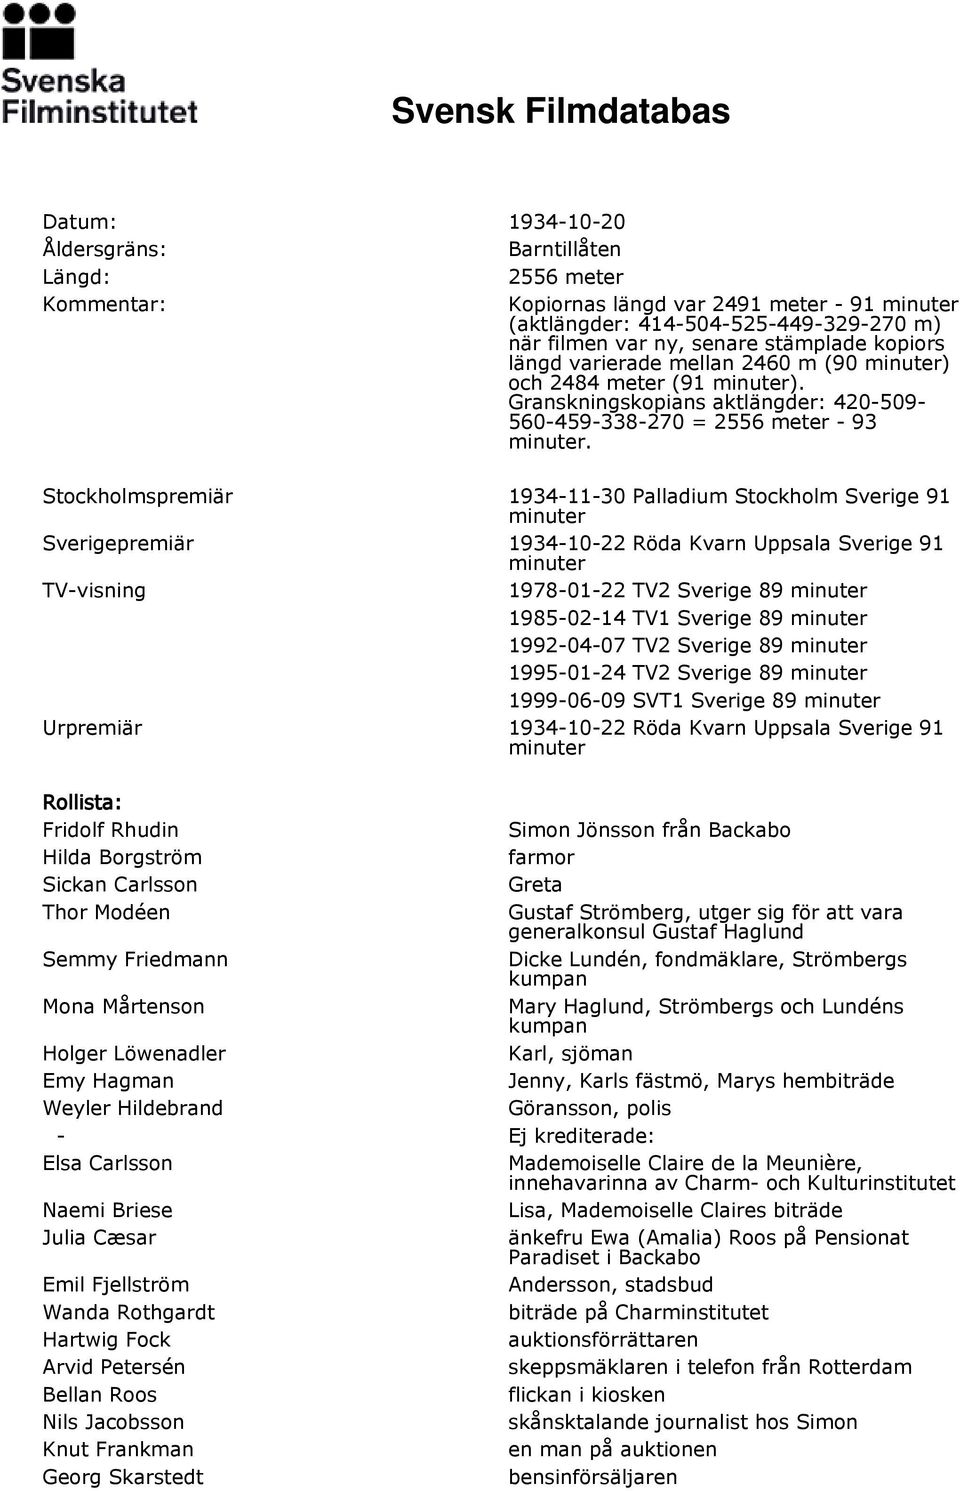 Stockholmspremiär 1934-11-30 Palladium Stockholm Sverige 91 Sverigepremiär 1934-10-22 Röda Kvarn Uppsala Sverige 91 TV-visning 1978-01-22 TV2 Sverige 89 1985-02-14 TV1 Sverige 89 1992-04-07 TV2